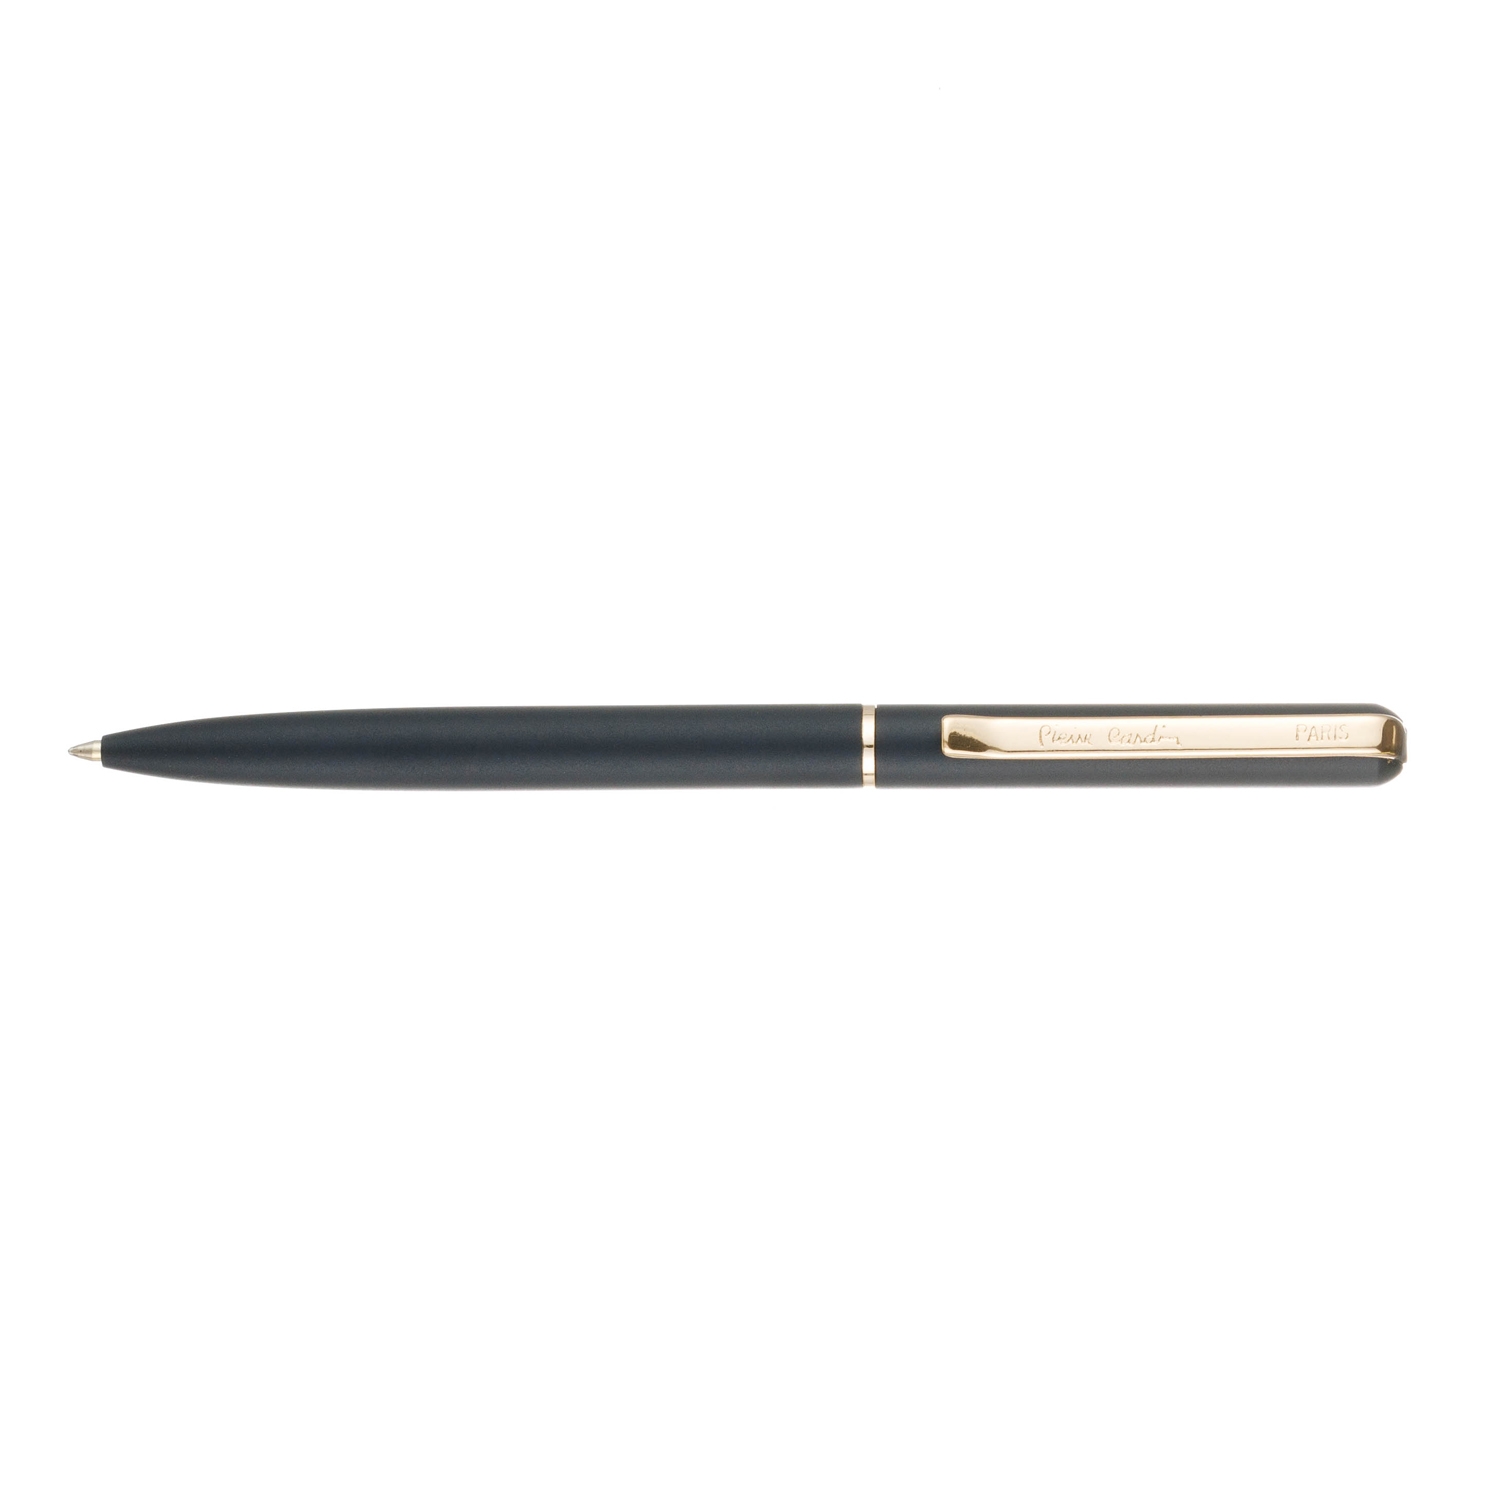 Ручка шариковая Pierre Cardin GAMME. Цвет - черный. Упаковка E., черный, нержавеющая сталь, ювелирная латунь